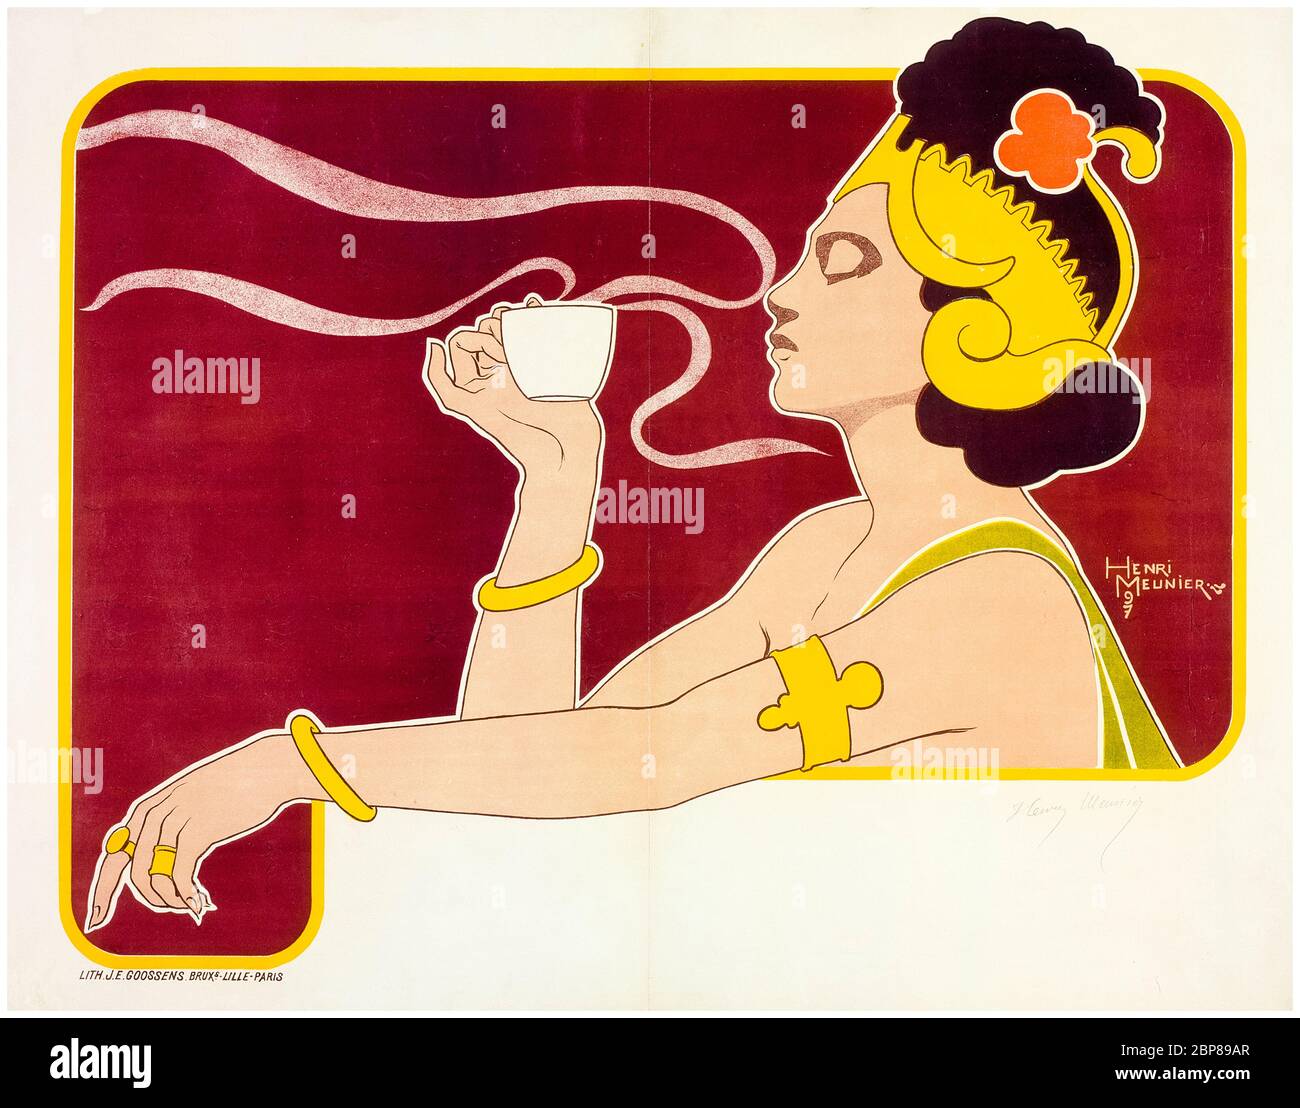 Henri Meunier, Artwork per Rajah pubblicità marchio caffè, poster Art Nouveau, 1897-1898 Foto Stock